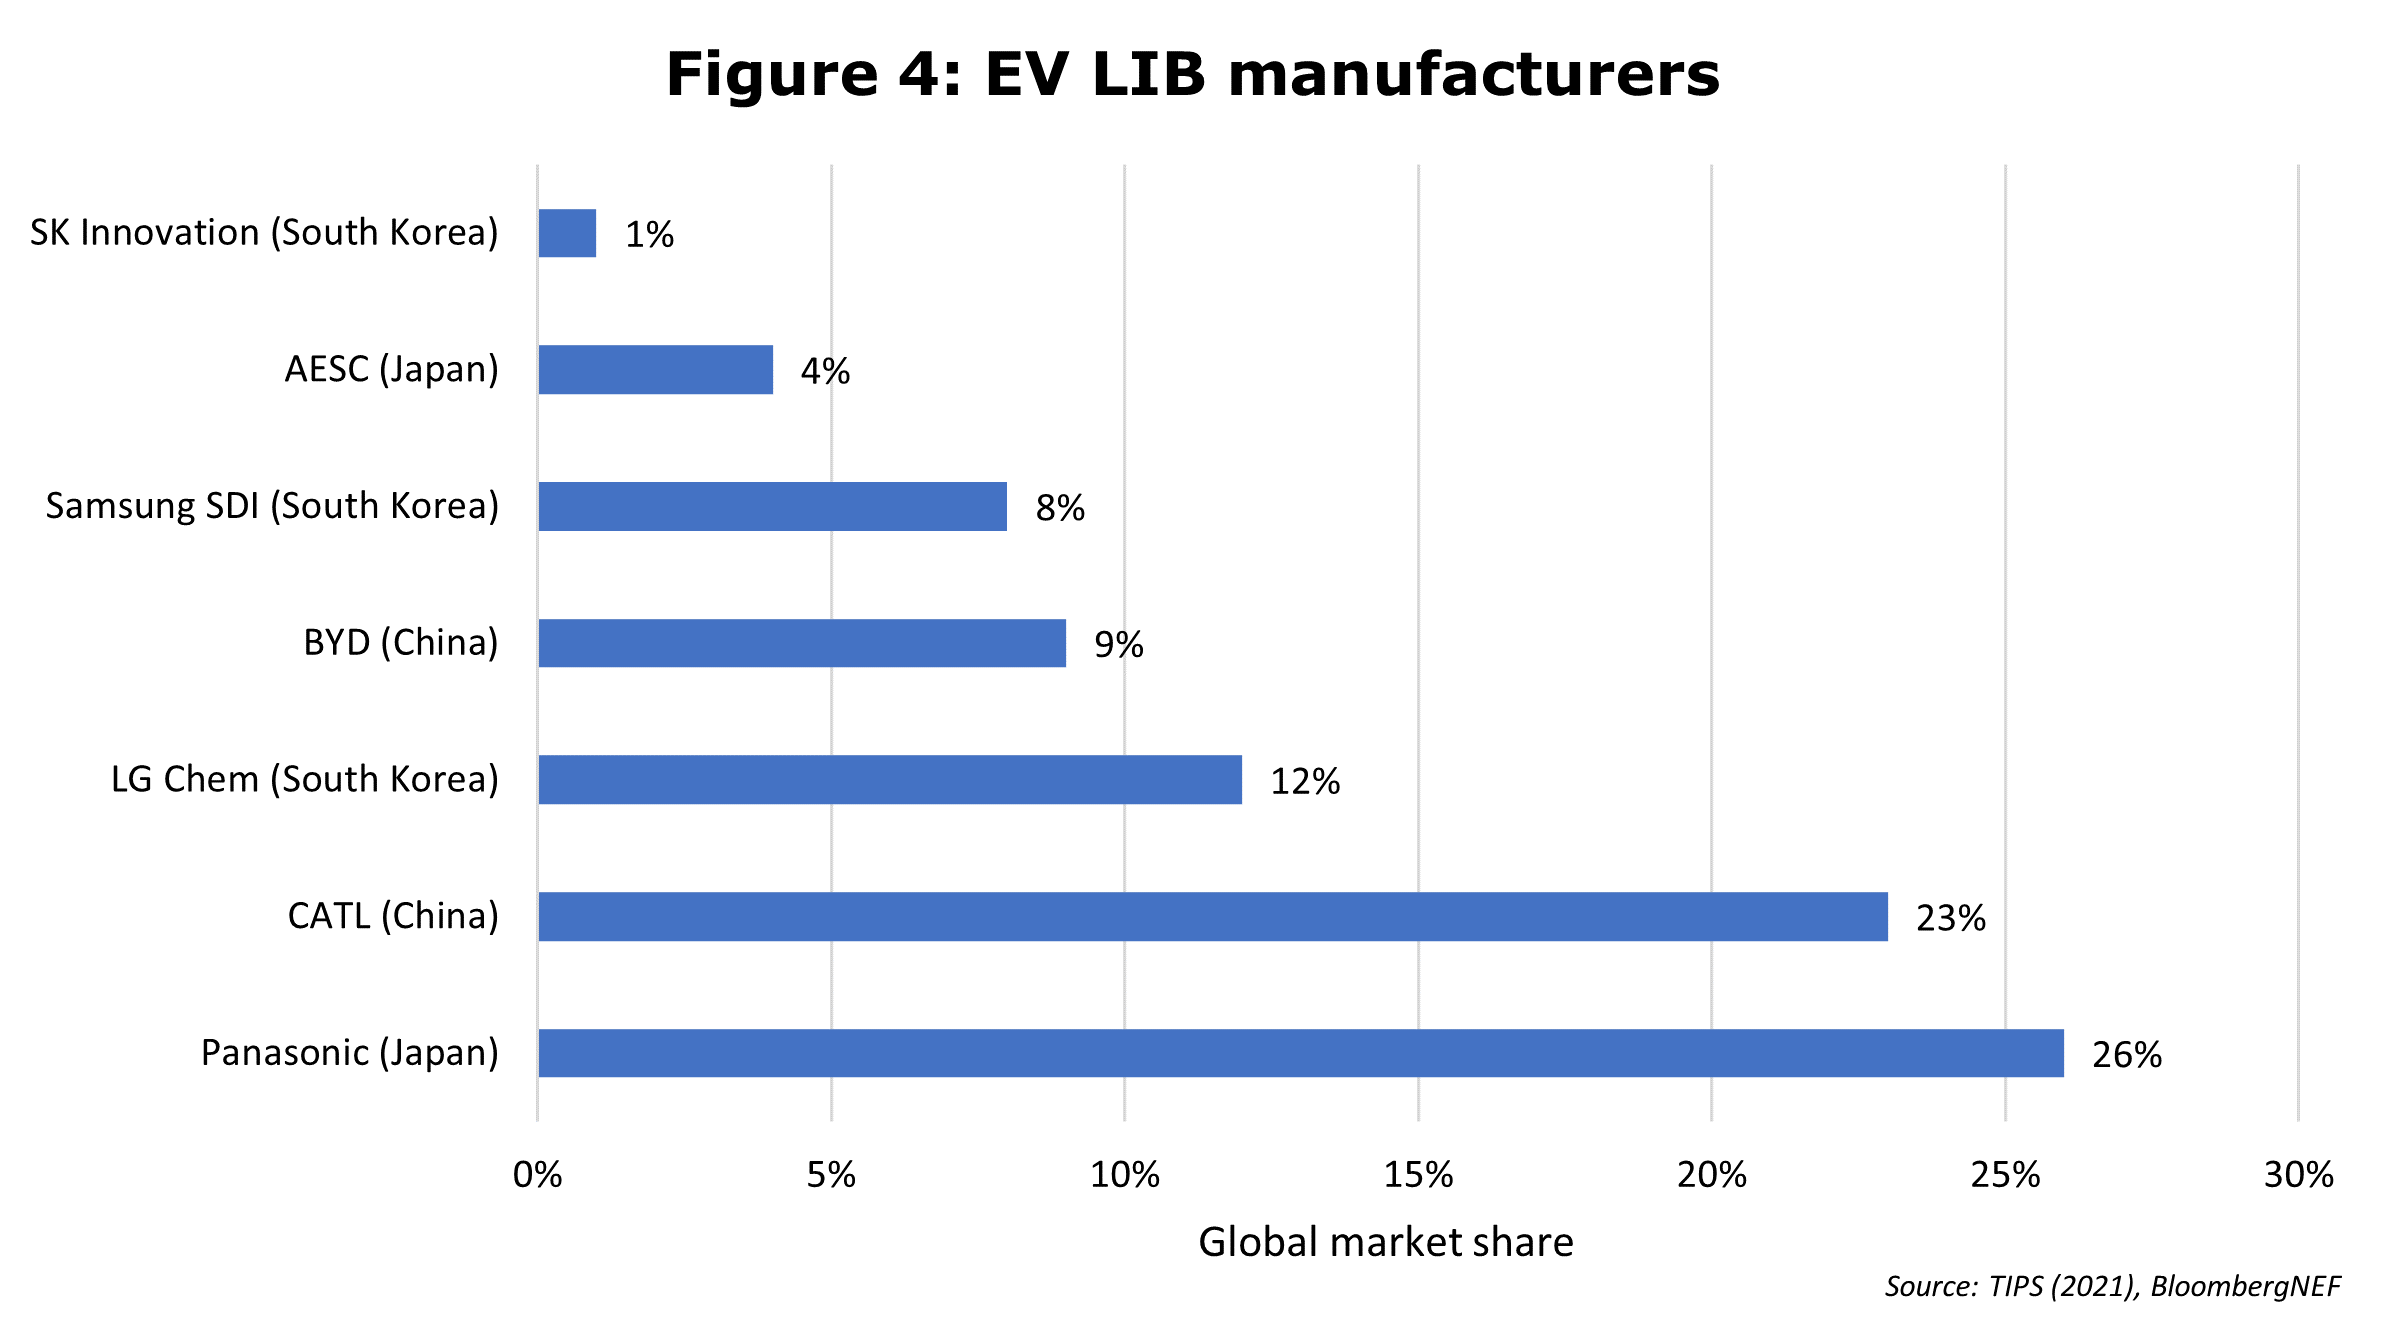 EV LIB manufacturers